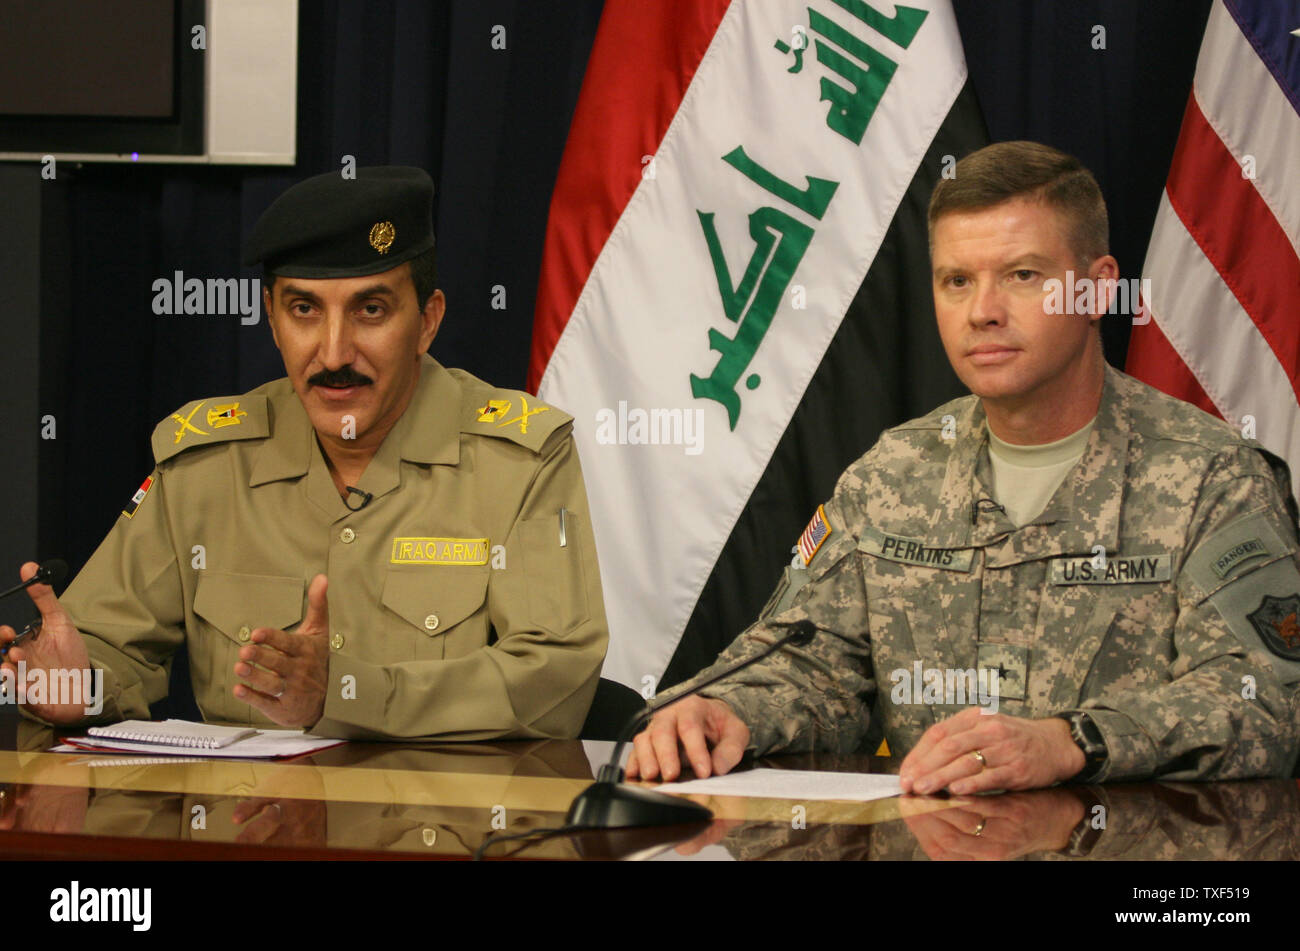 Officier de l'armée de l'armée iraquienne le général Qassim Atta al-Moussawi (L), porte-parole pour l'opération Fardh al-Qanoon et porte-parole de l'armée américaine le Général David Perkins bref les médias sur les opérations militaires, à Bagdad, l'Iraq le 24 septembre 2008. (Photo d'UPI/Ali Jasim) Banque D'Images